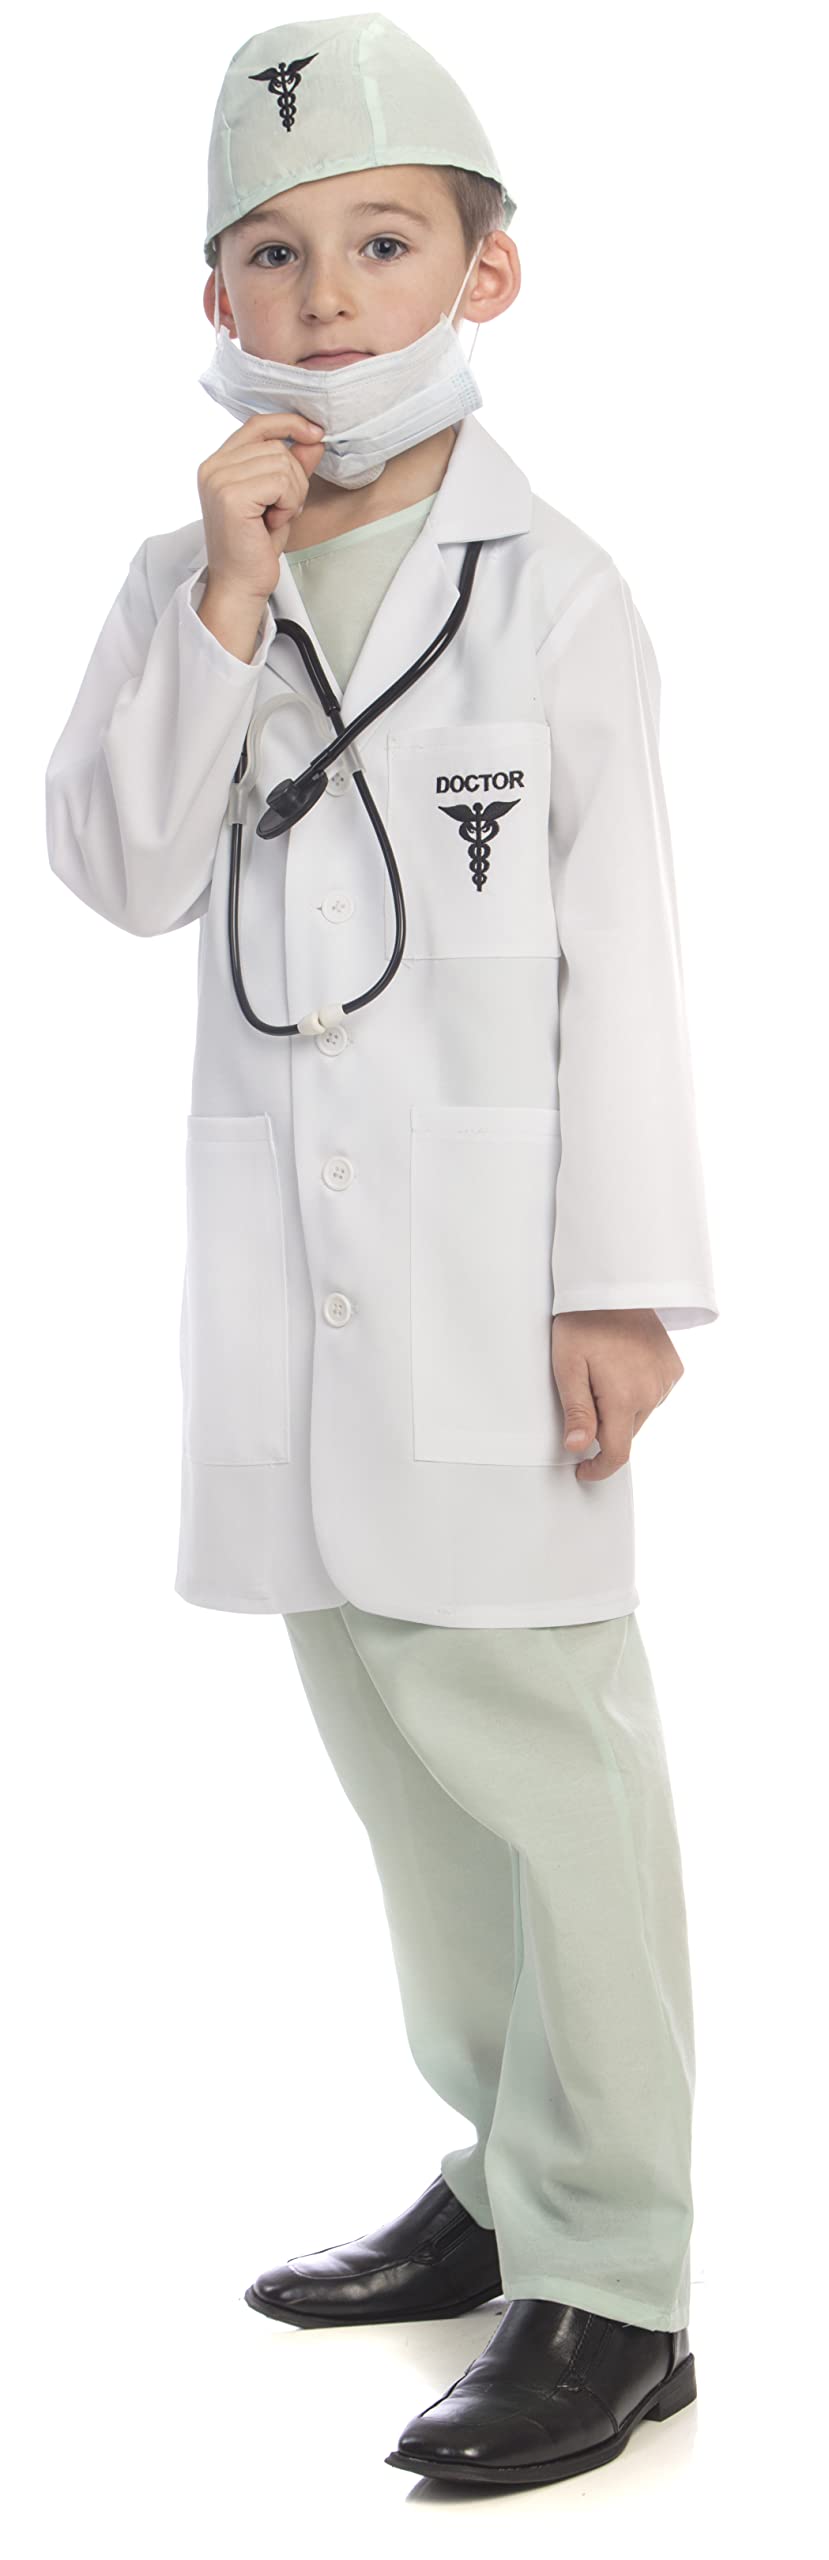 Dress Up America Arztkostüm für Kinder – Dr. Scrubs und Set für Mädchen und Jungen – Tolles Geschenk für Rollenspiele und Spaß